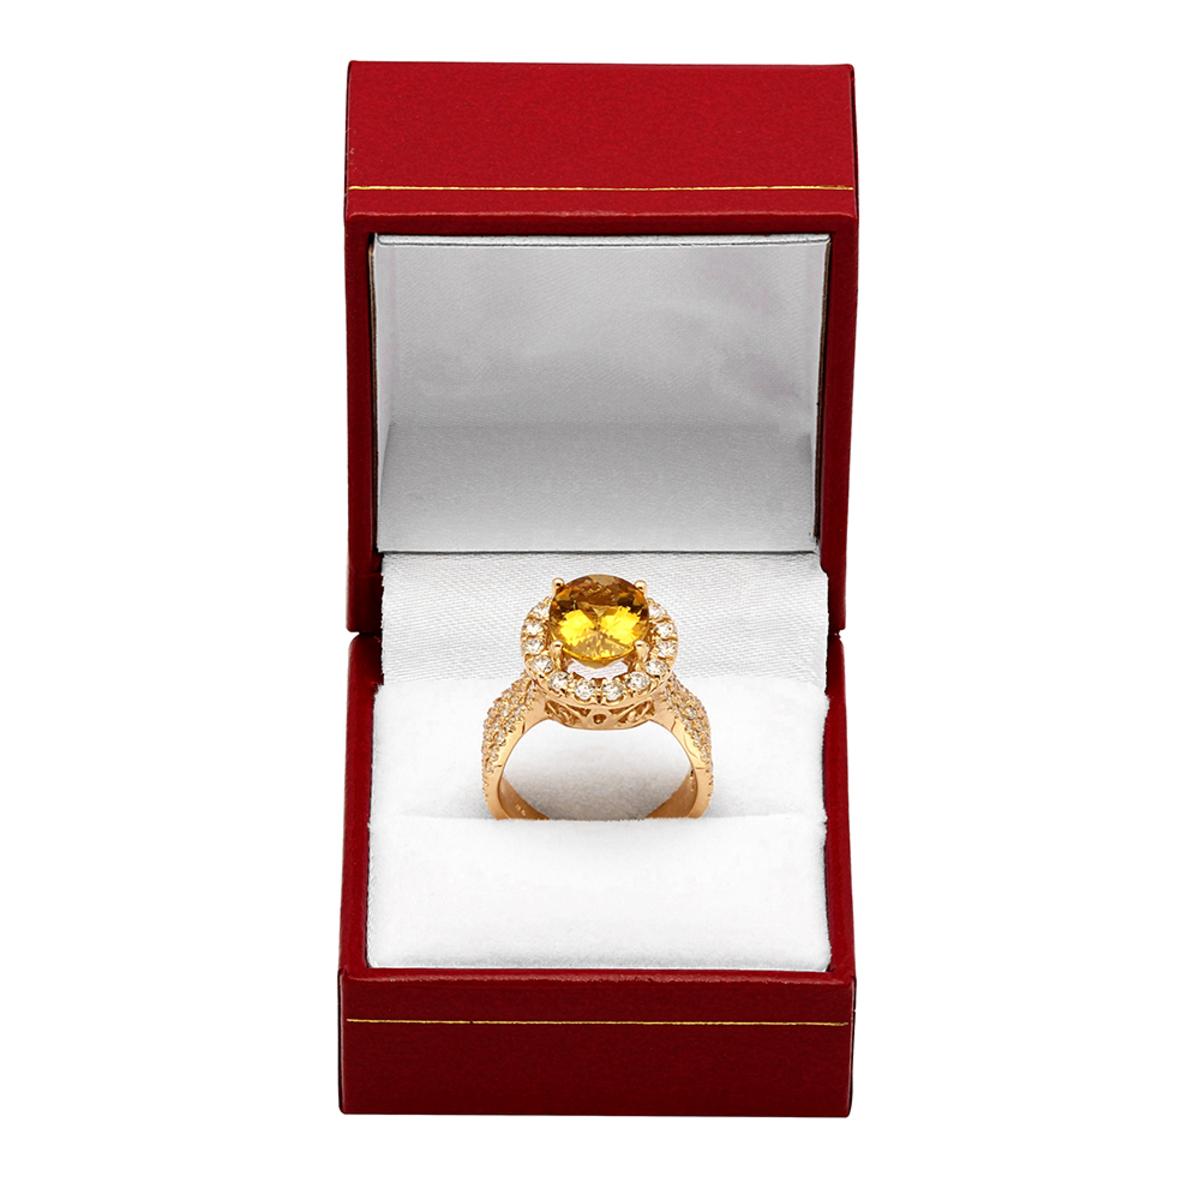 14k Yellow Gold 3.70 Yellow Beryl 1.57ct Diamond Ring